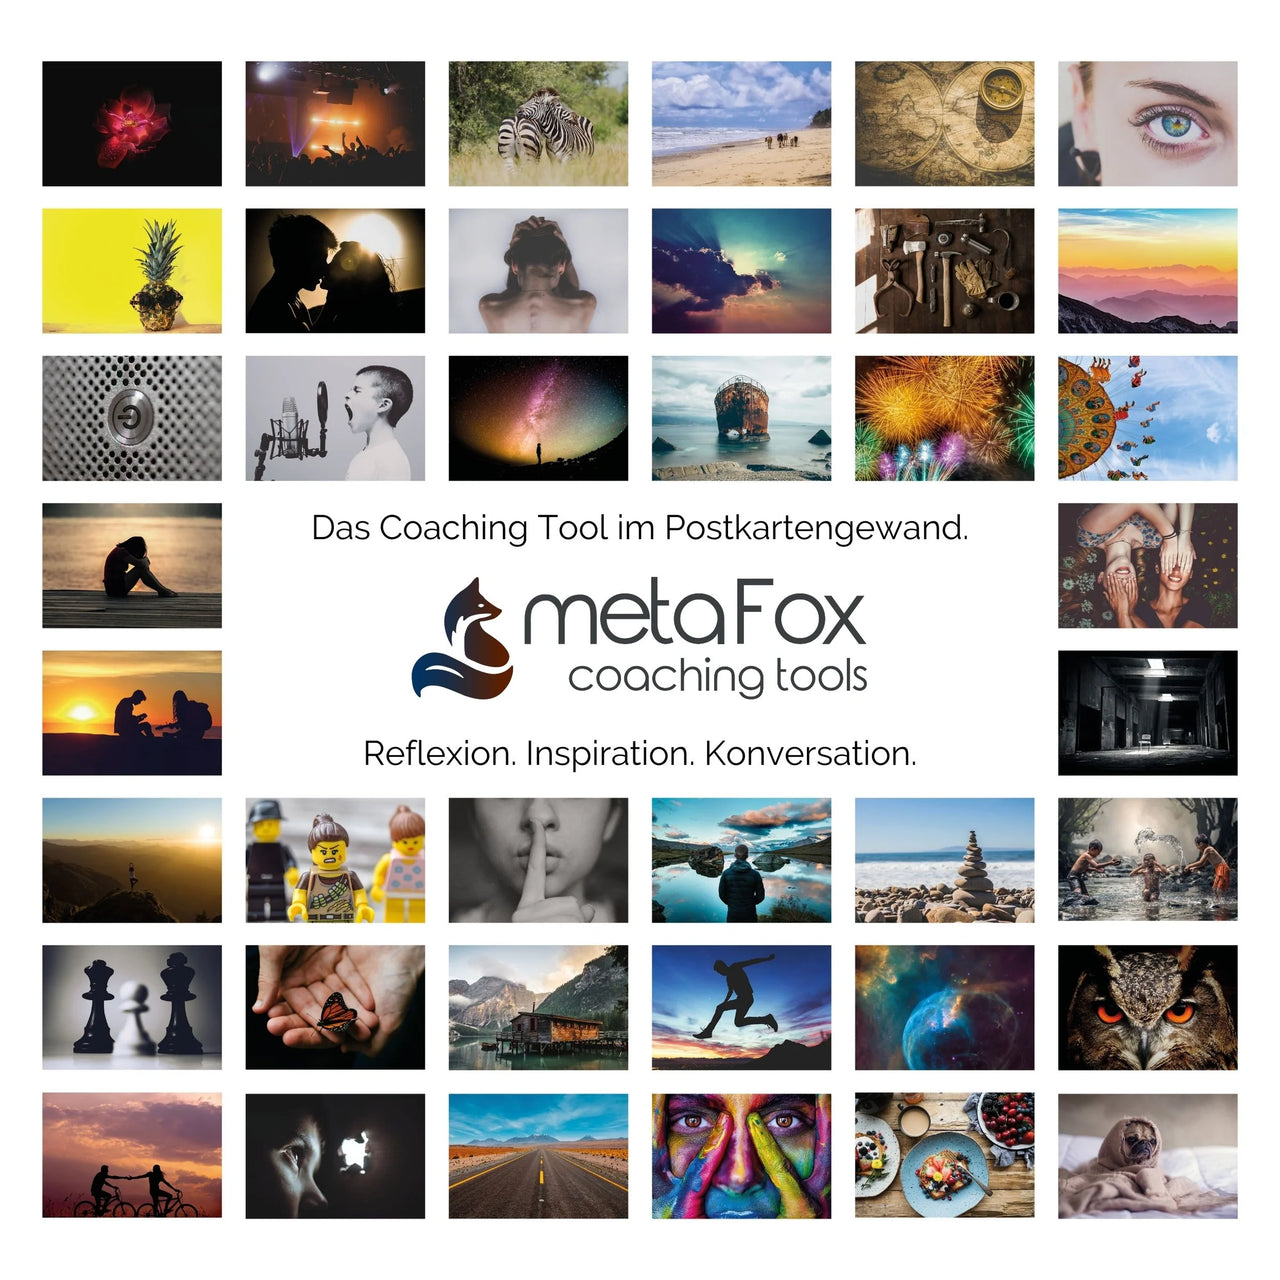 metaFox - cartoline fotografiche di "mondi emozionali" con immagini profonde